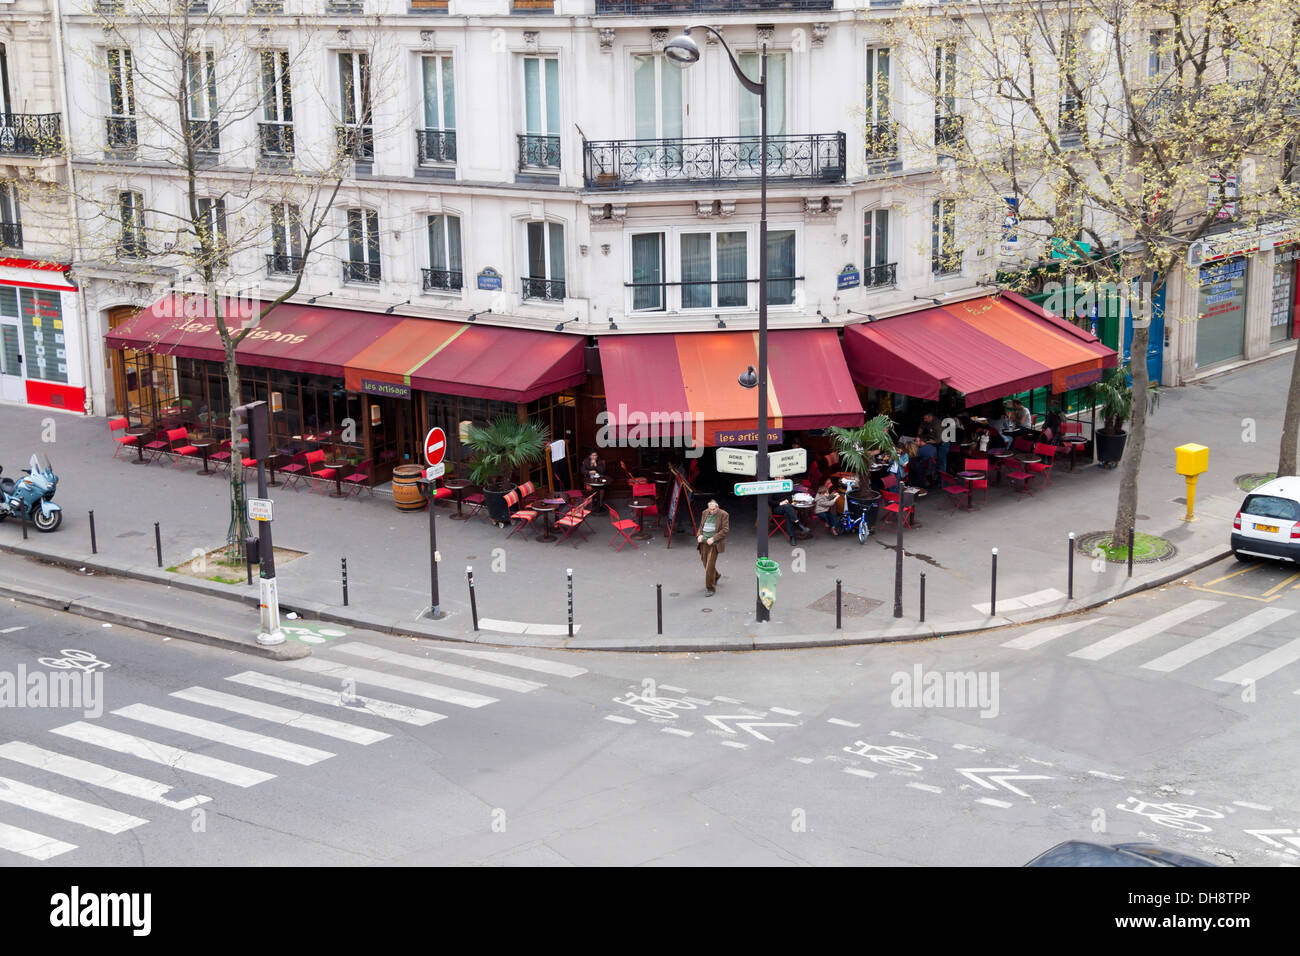 Typical exterior Facade in Paris, France Stock Photo